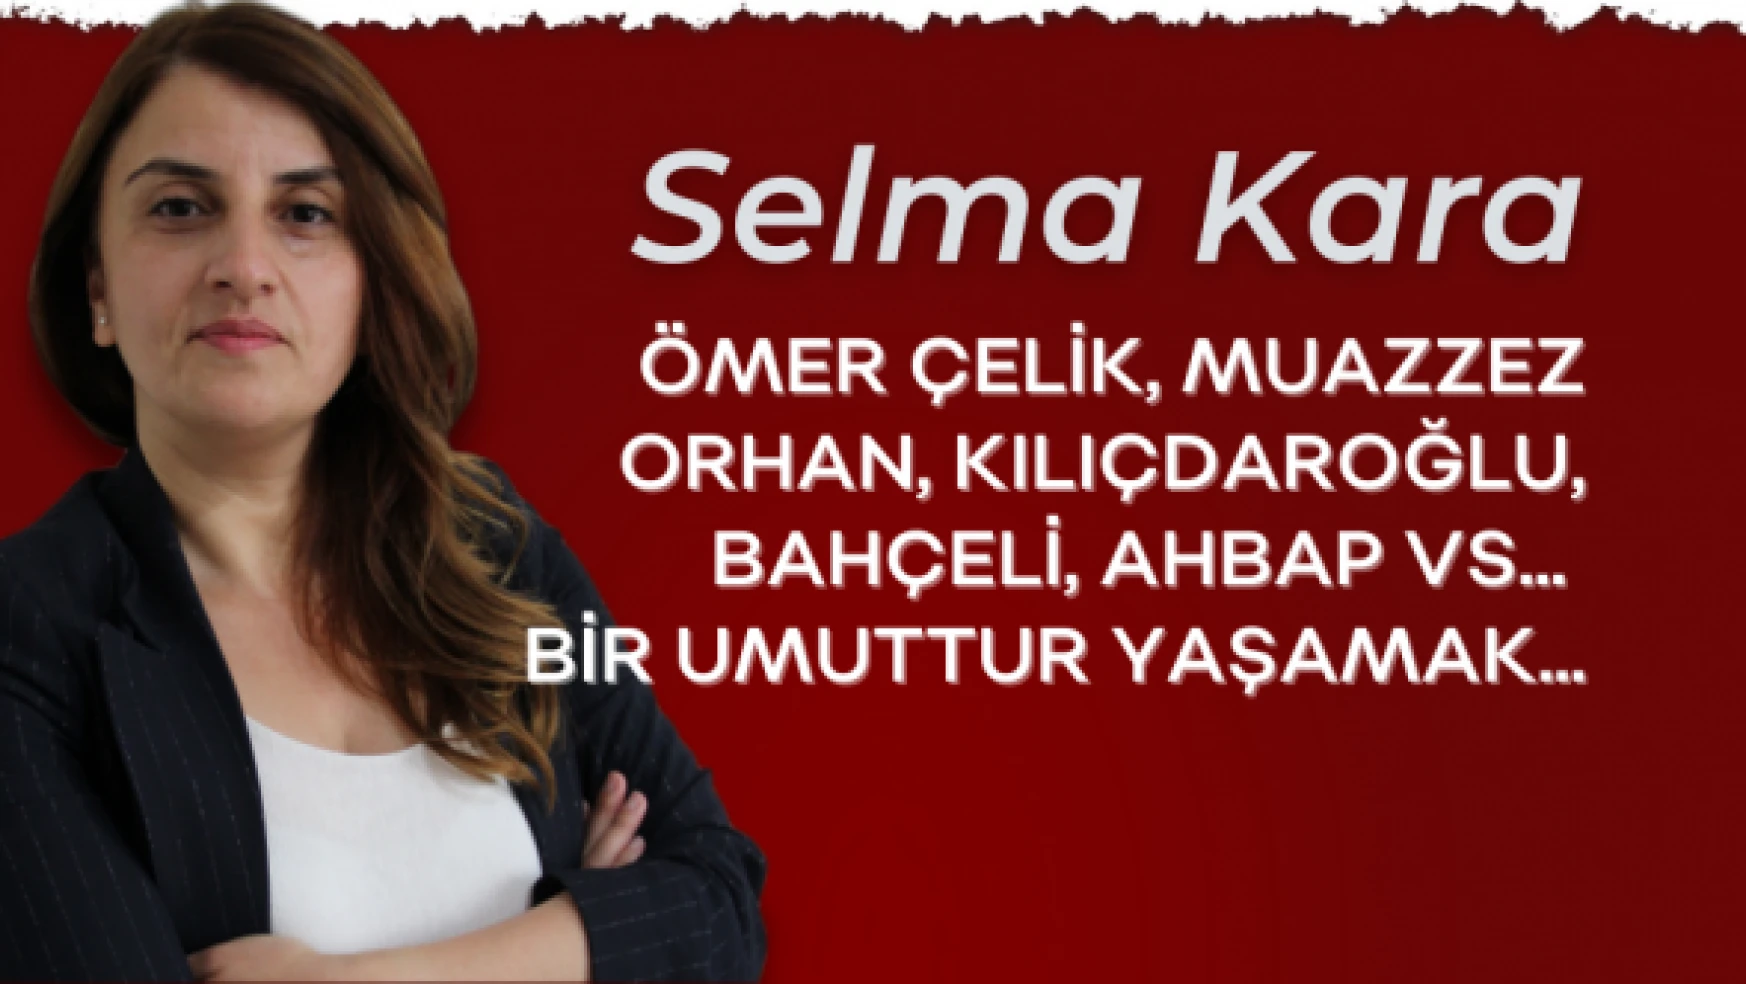 Gazeteci Selma Kara yazdı: &quotBir umuttur yaşamak"